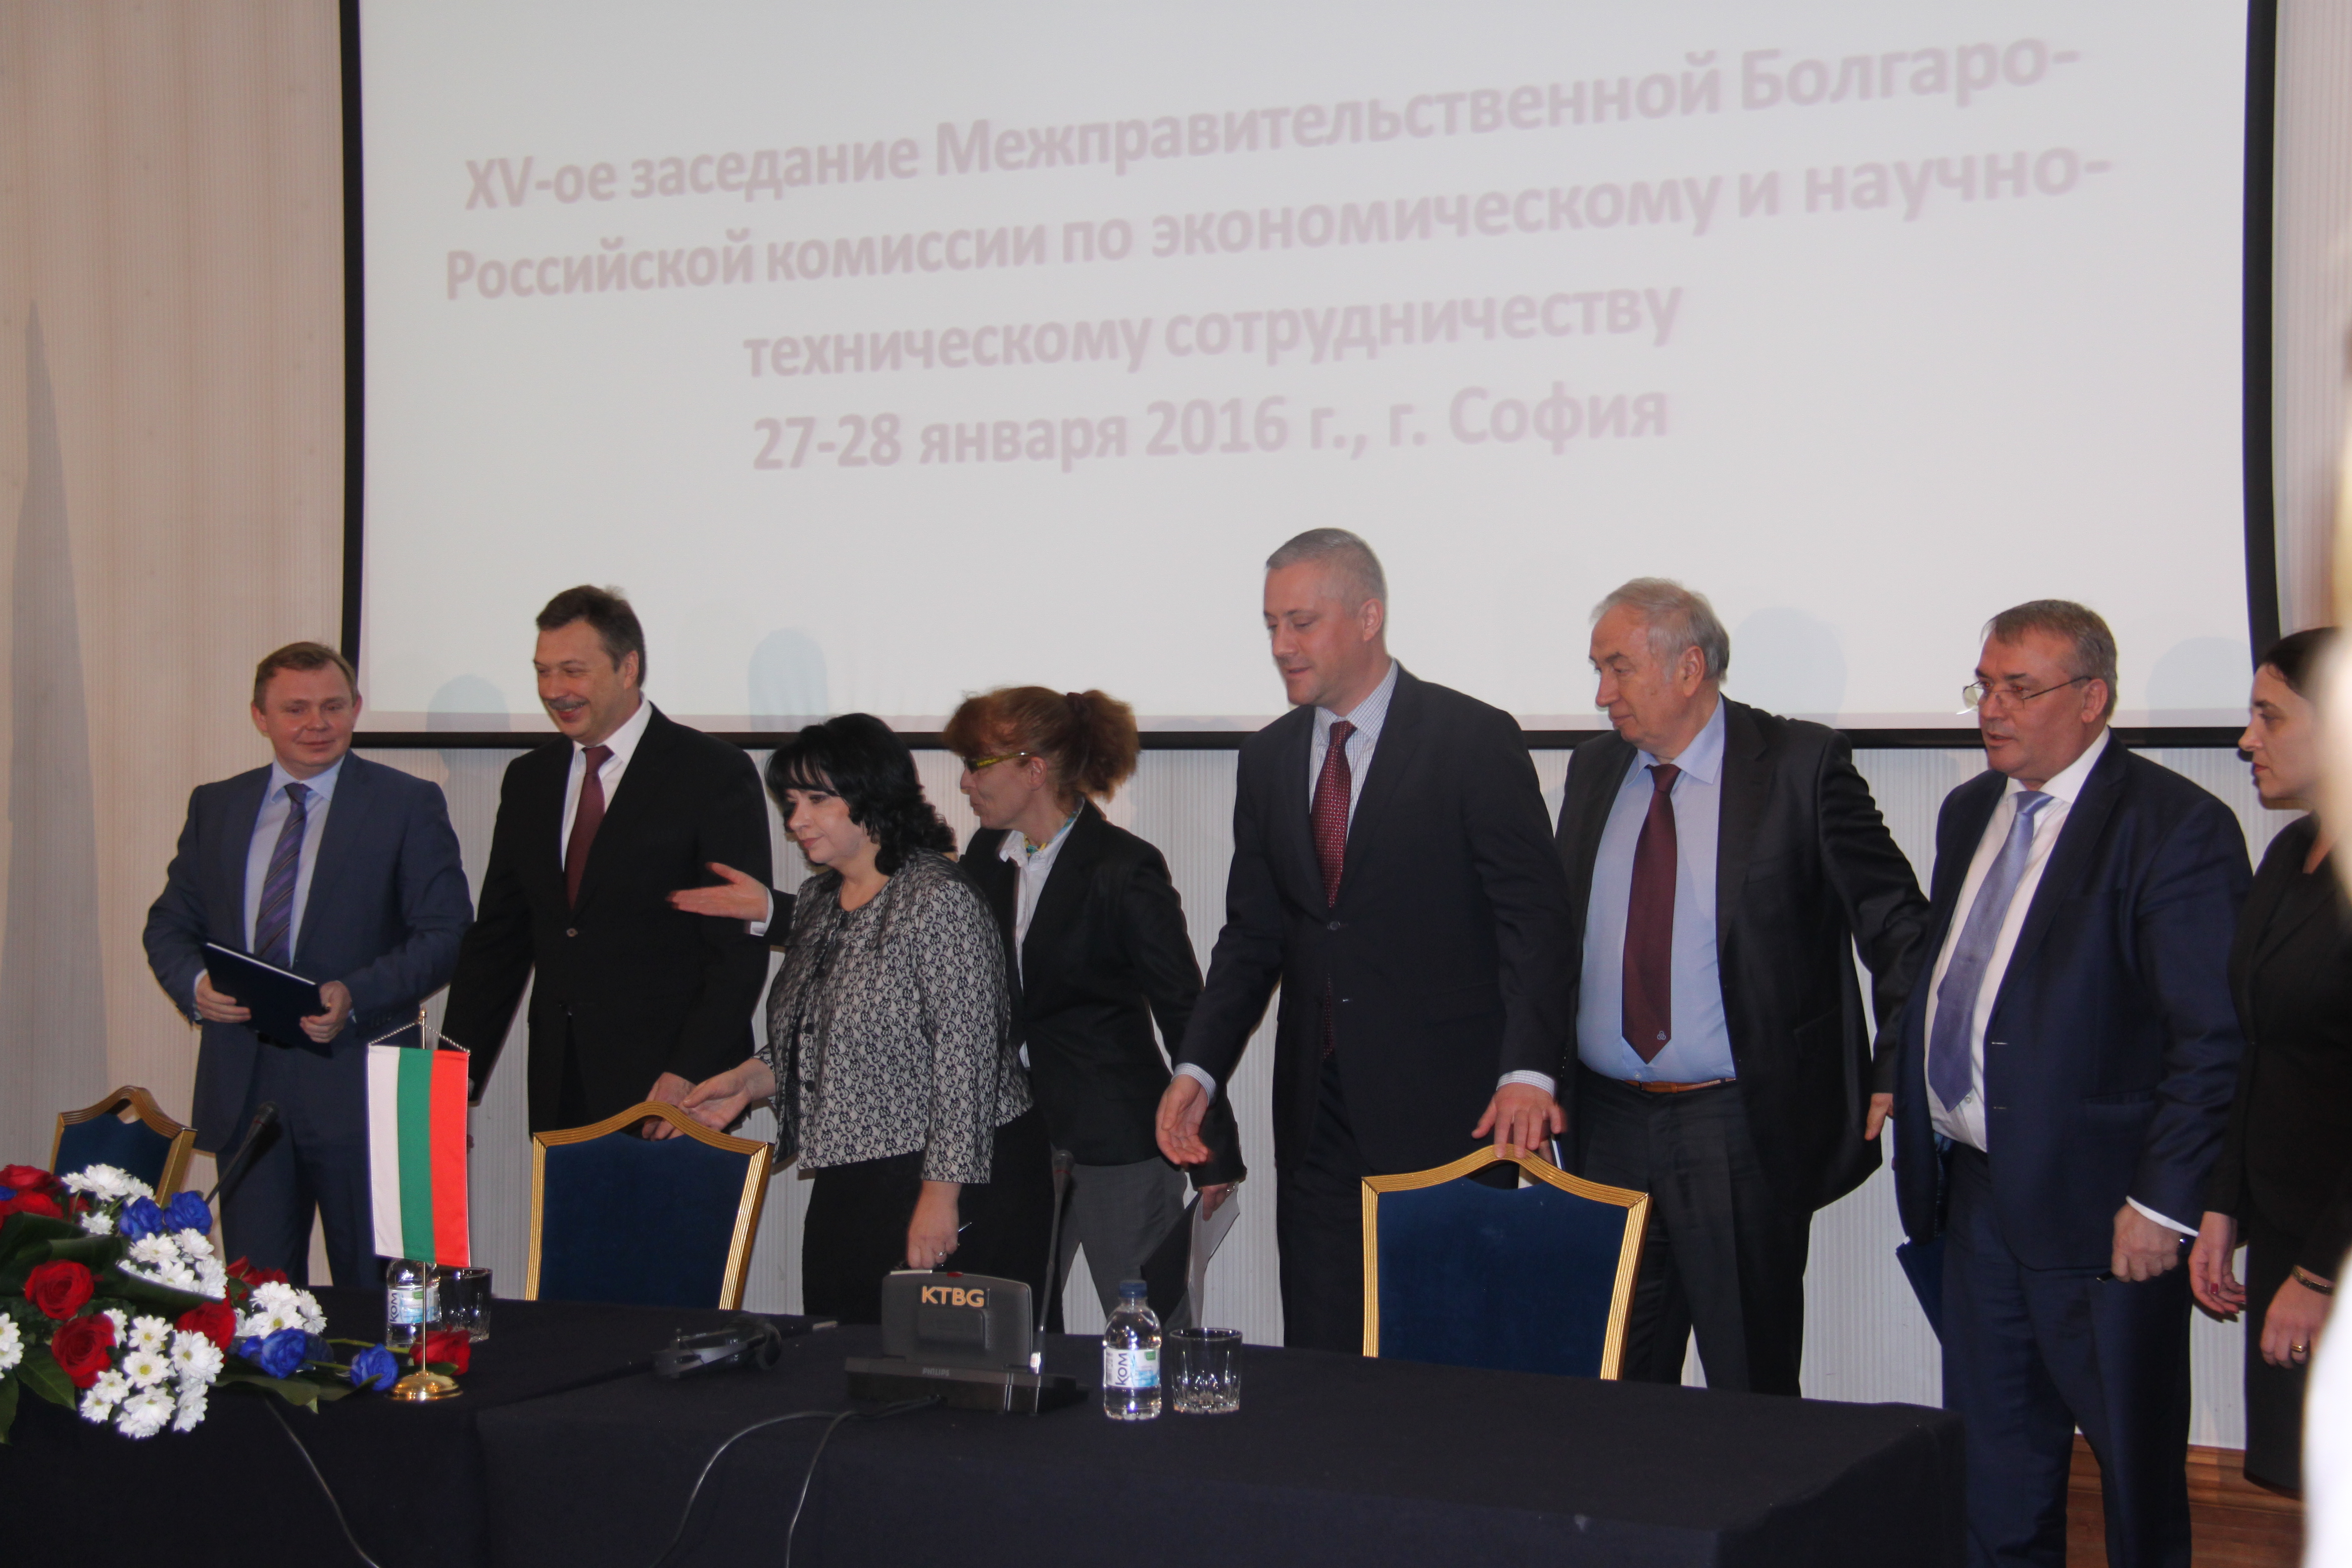 Българо-руската комисия обсъди възможностите за намаляване на цената на визите за граждани на РФ, които са избрали да почиват в България.